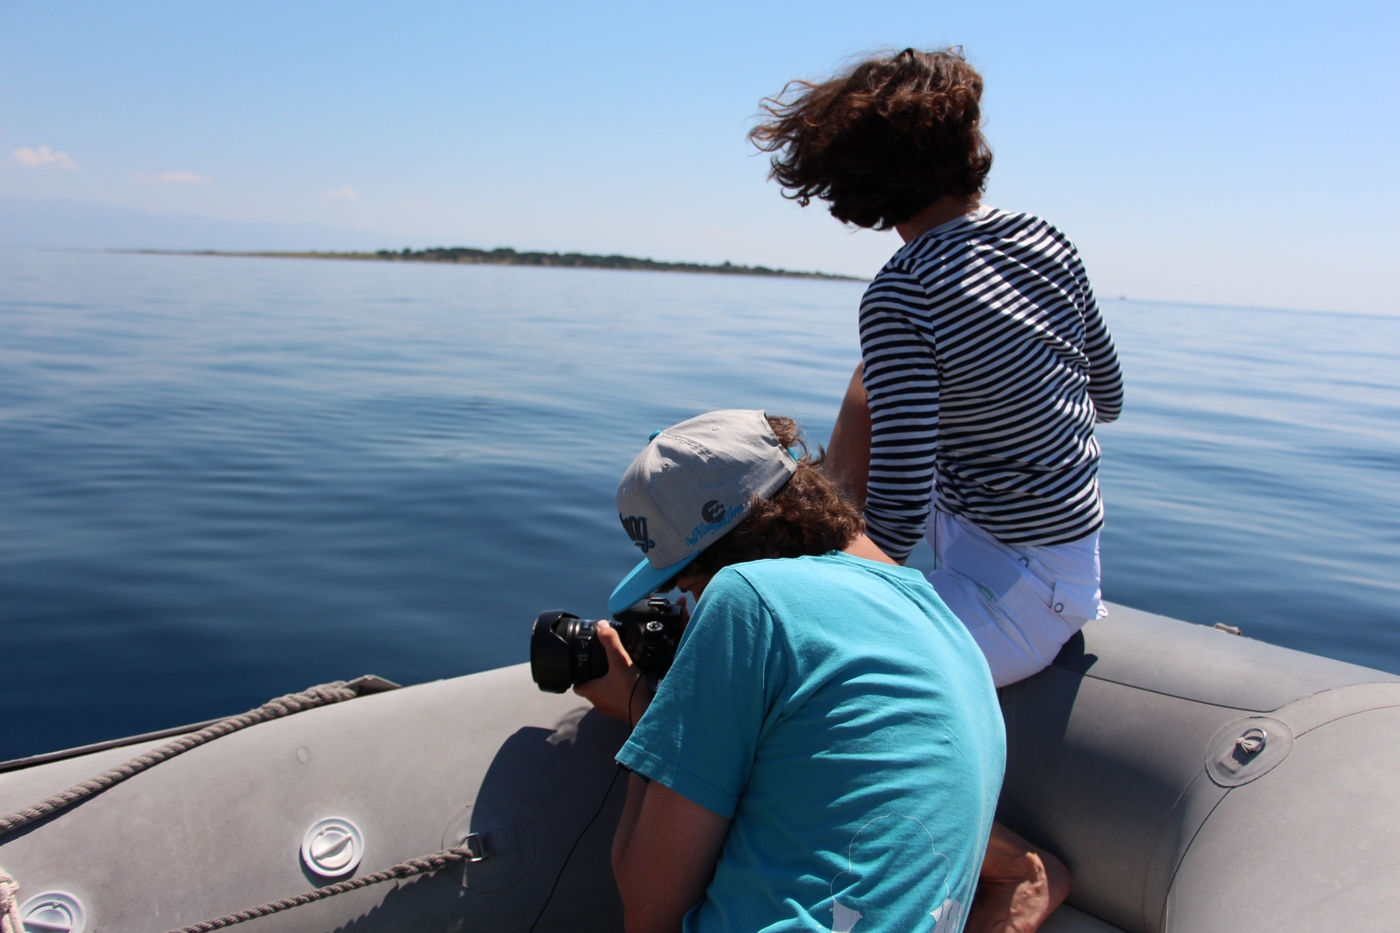 Лучшая работа в России 2014, второй репортаж из Хорватии. День дельфина - одна из шести камер в лодке